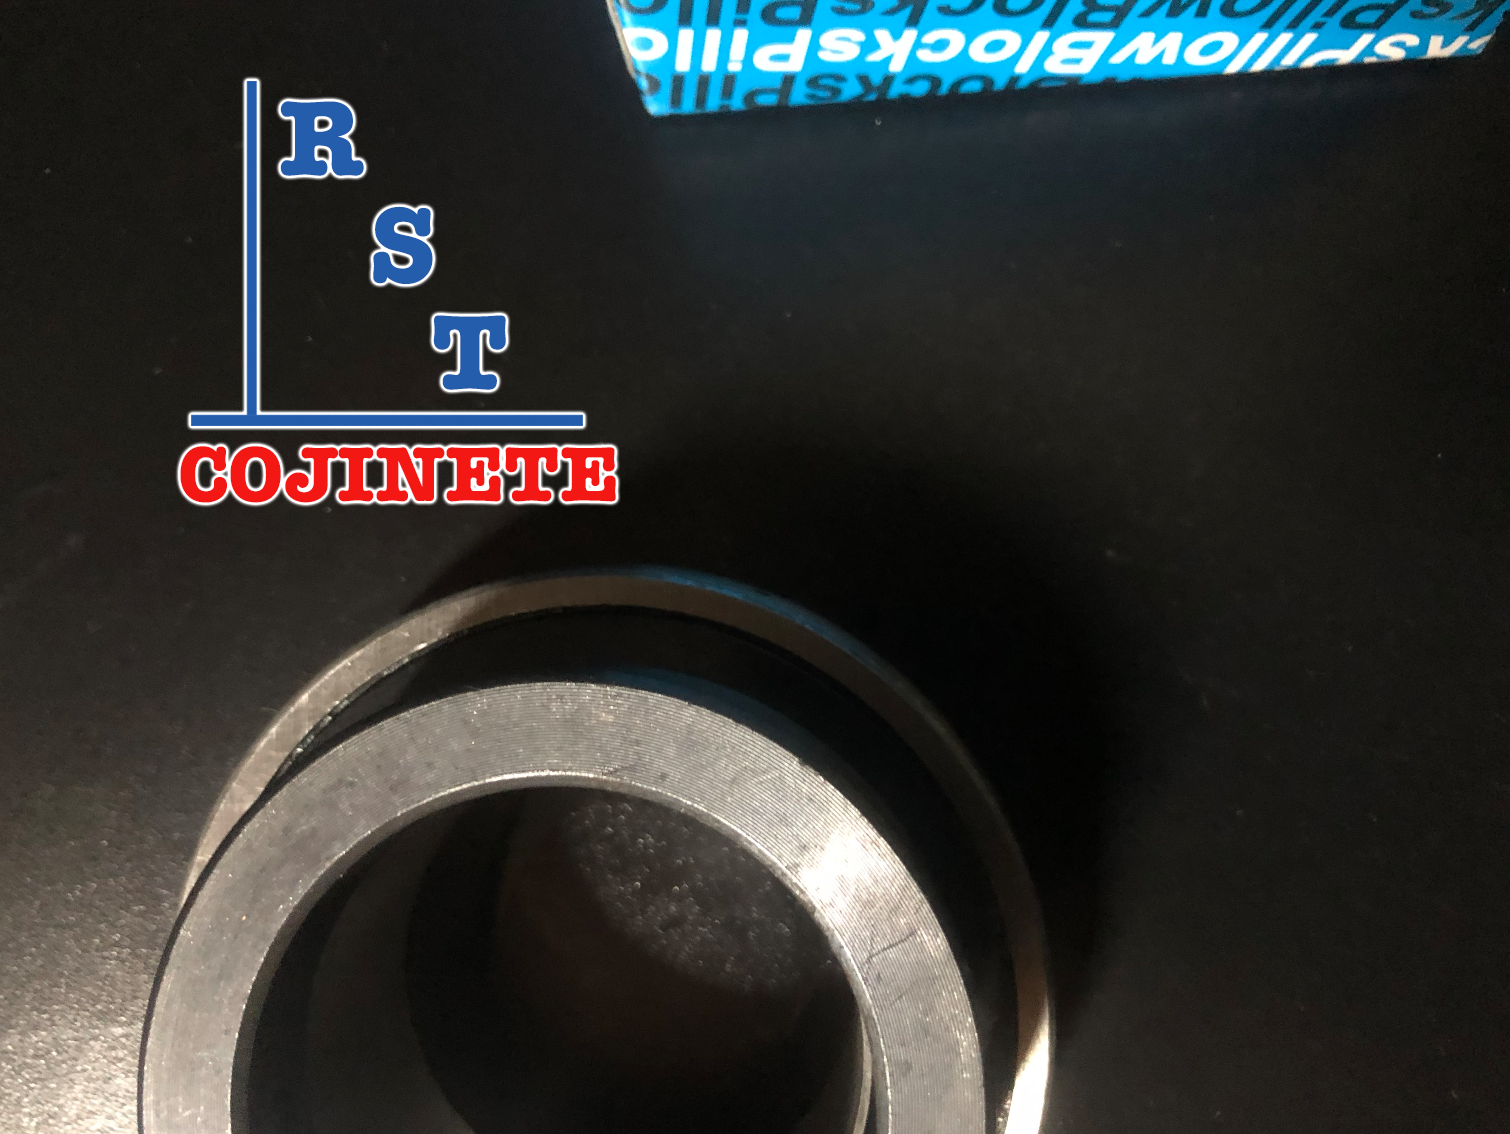 Rodamiento SA206-18 | Cojinete para chumaceras con eje de 1-⅛" con respaldo plano y anillo excéntrico-5